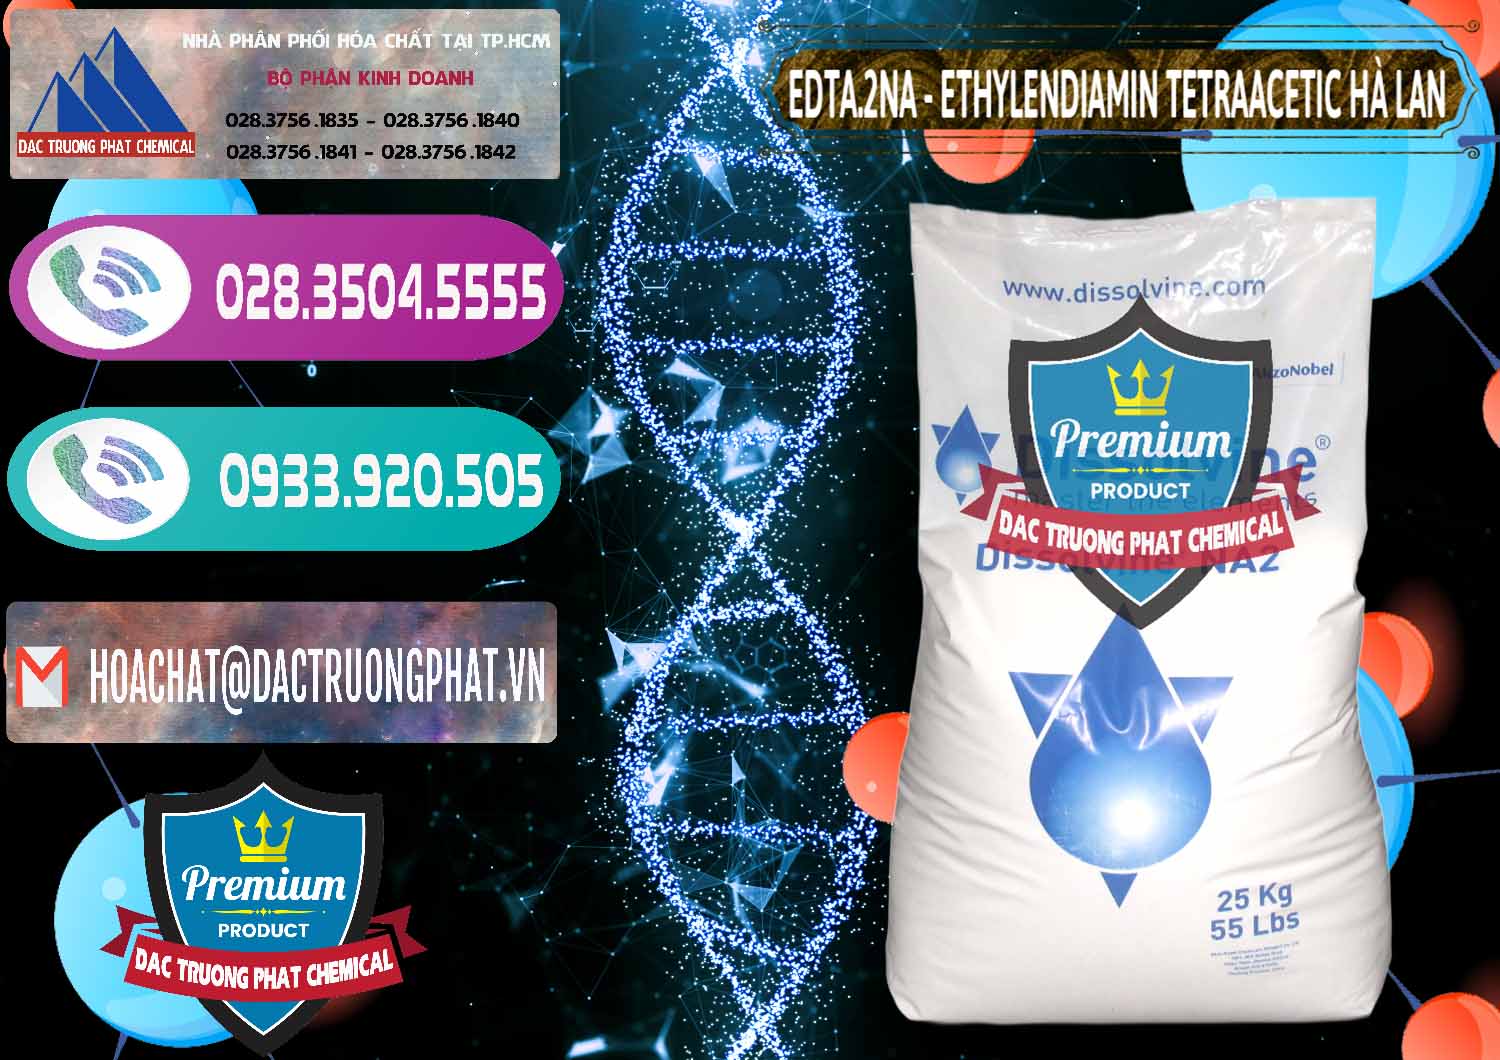 Đơn vị chuyên nhập khẩu _ bán EDTA.2NA - Ethylendiamin Tetraacetic Dissolvine Hà Lan Netherlands - 0064 - Cung cấp - kinh doanh hóa chất tại TP.HCM - hoachatxulynuoc.com